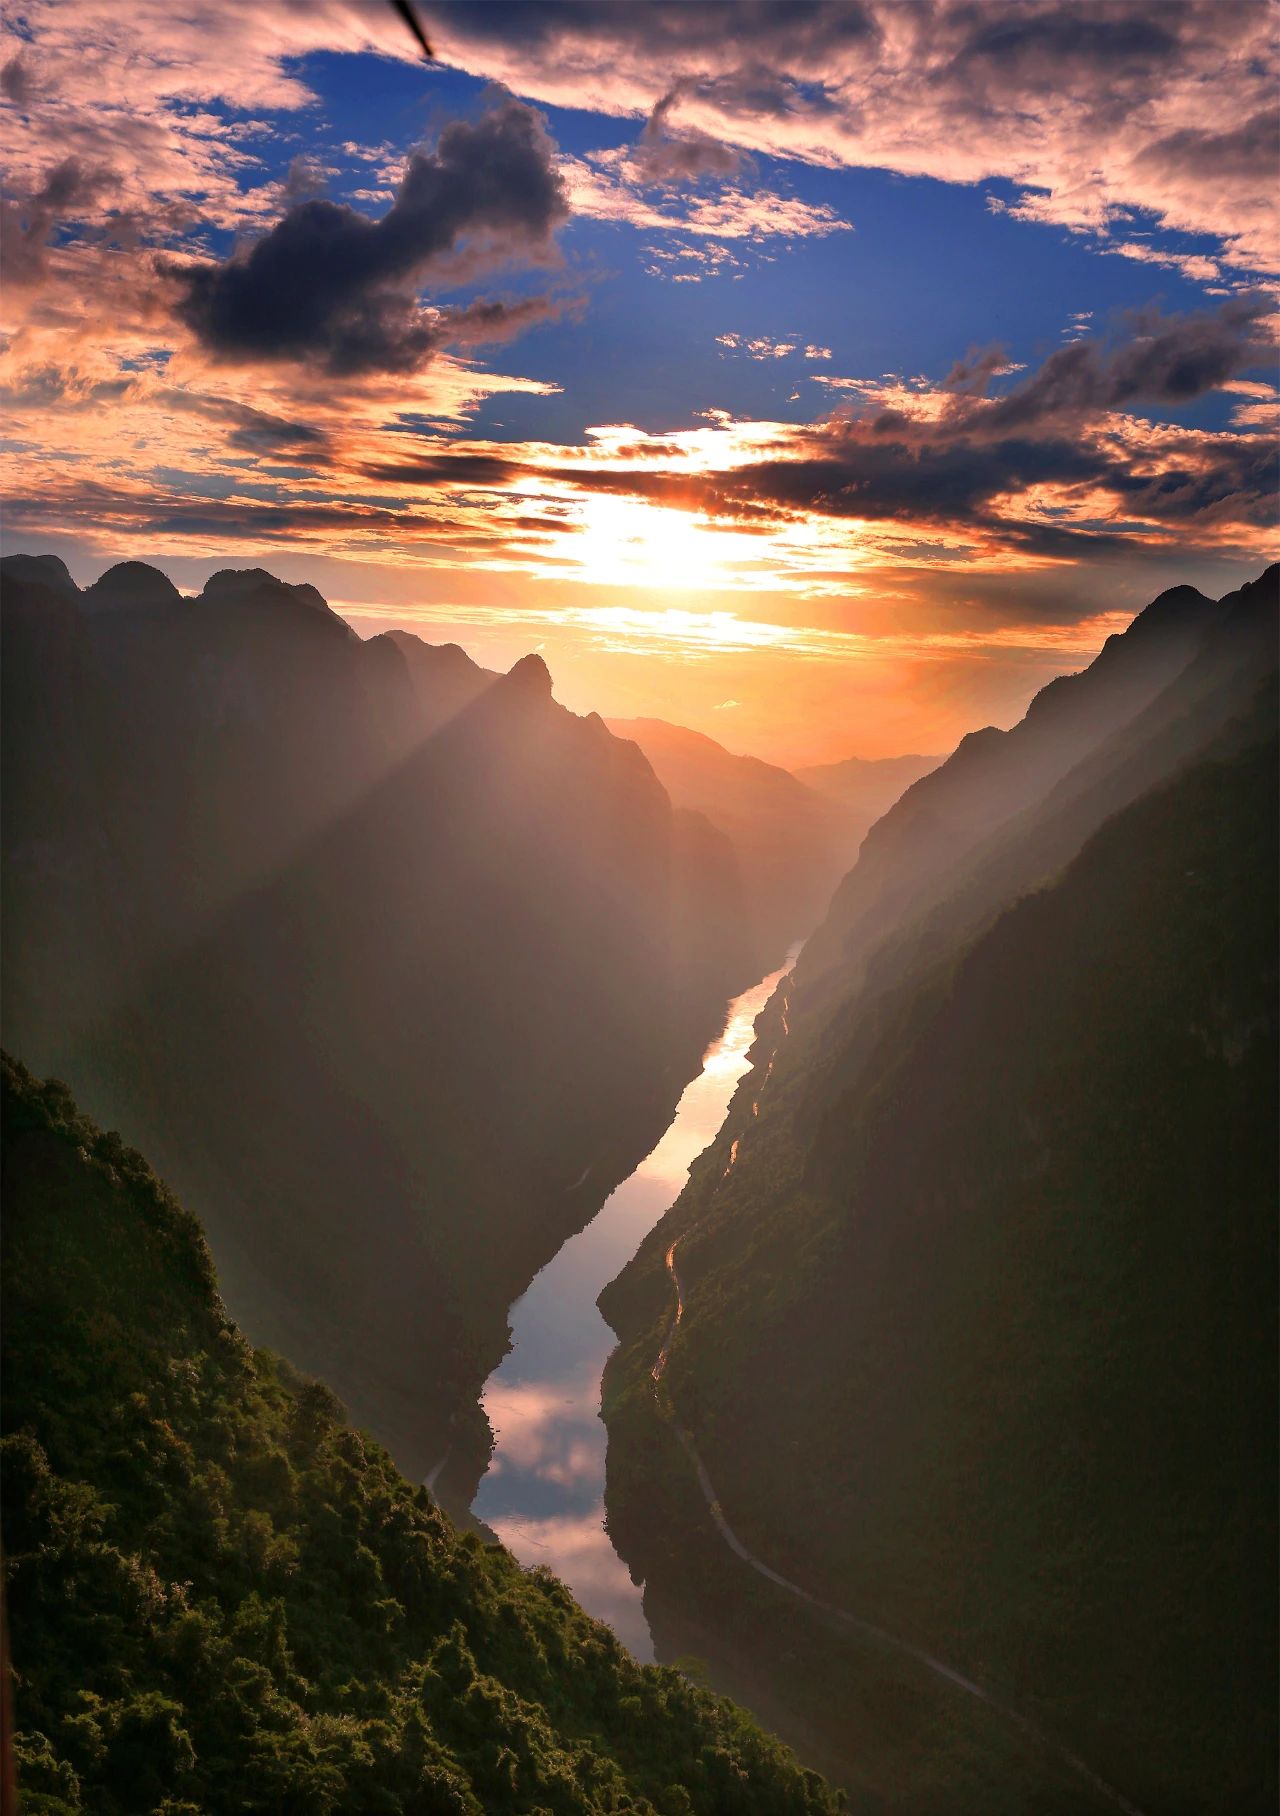 龙滩大峡谷高深险俊、两岸山体巍峨，被专家们誉为“中国最壮美的河谷”